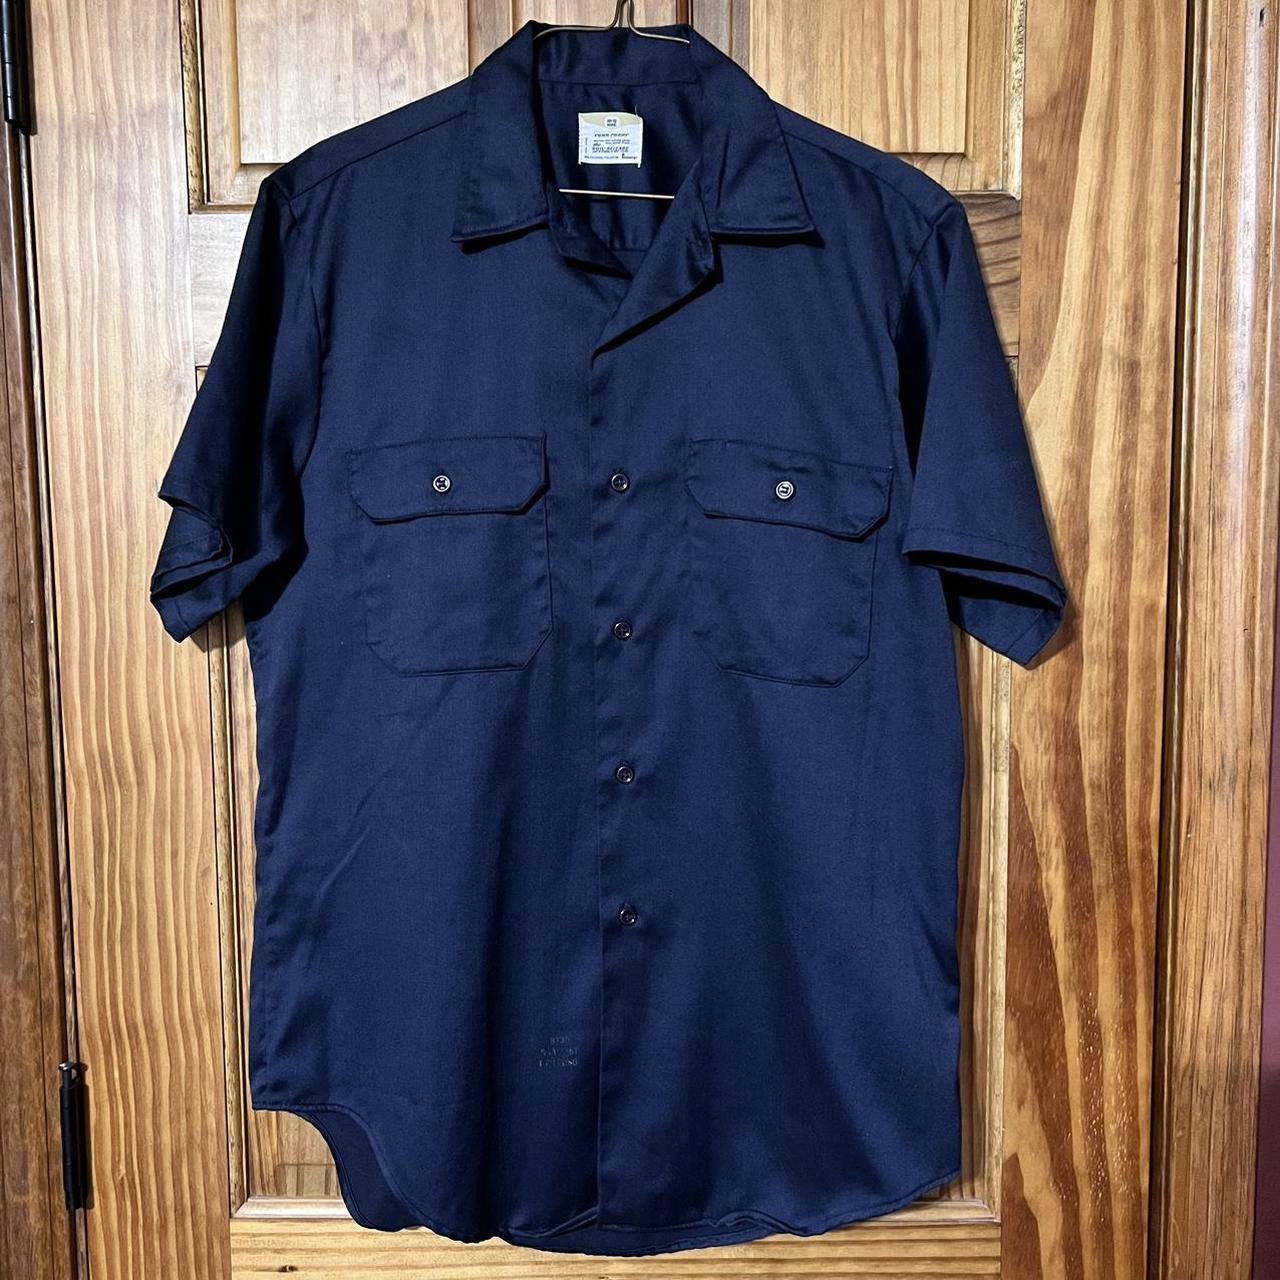 Vintage Big Mac Pennys navy industrial work shirt ... - Depop